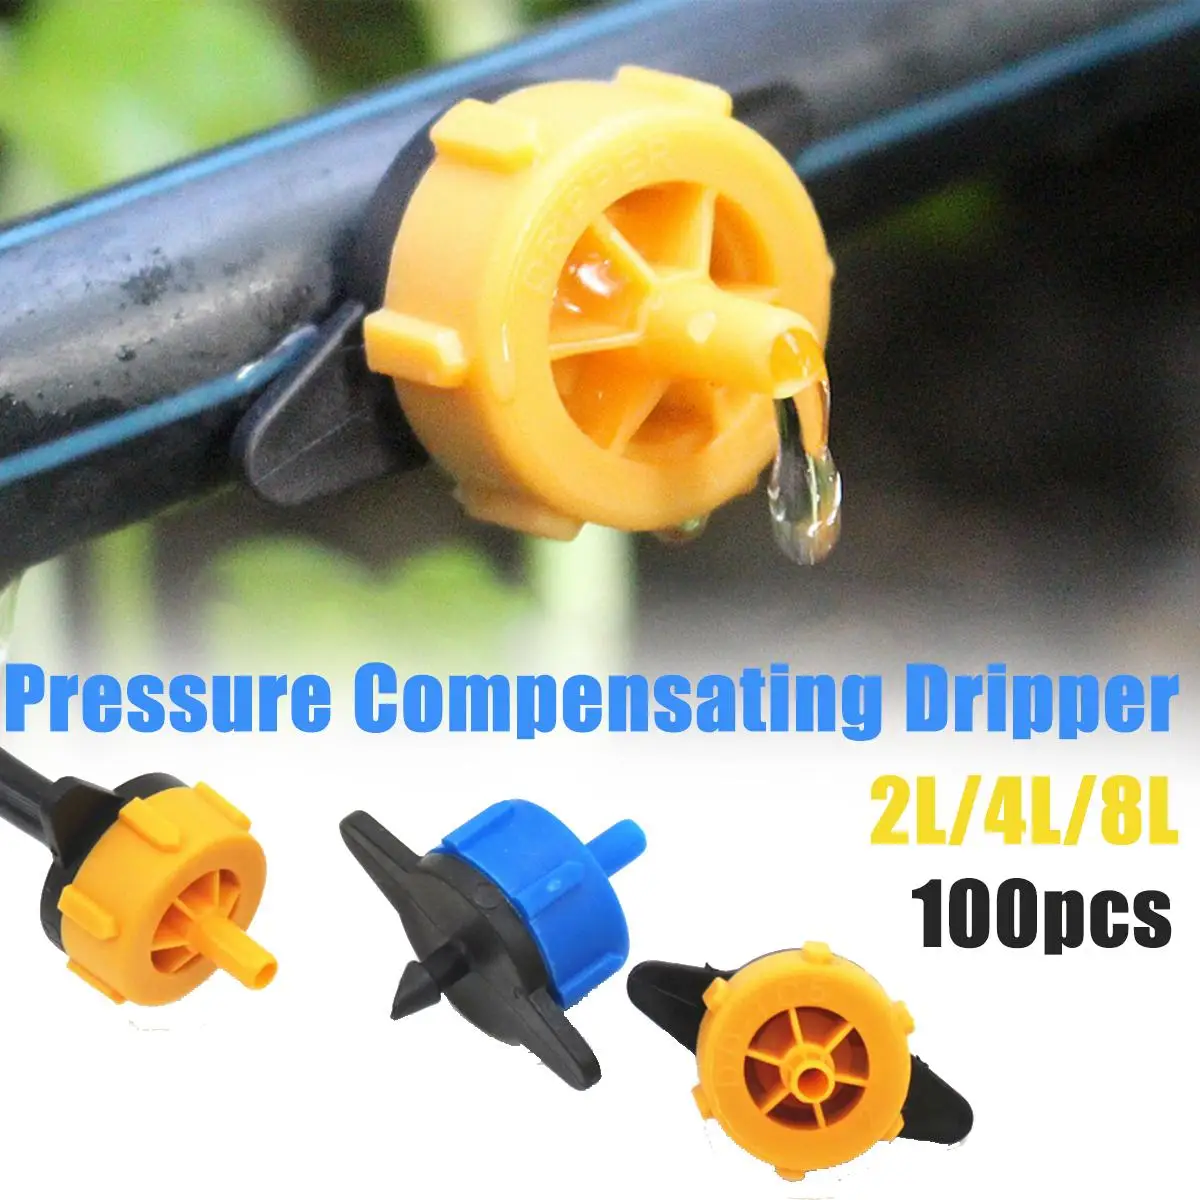 
100pcs 2l 4l 8l Pressure Compensating Dripper For Arrow Drip System Drip Emitter On Line Dripper Micro Drip Irrigation  (1600225565824)